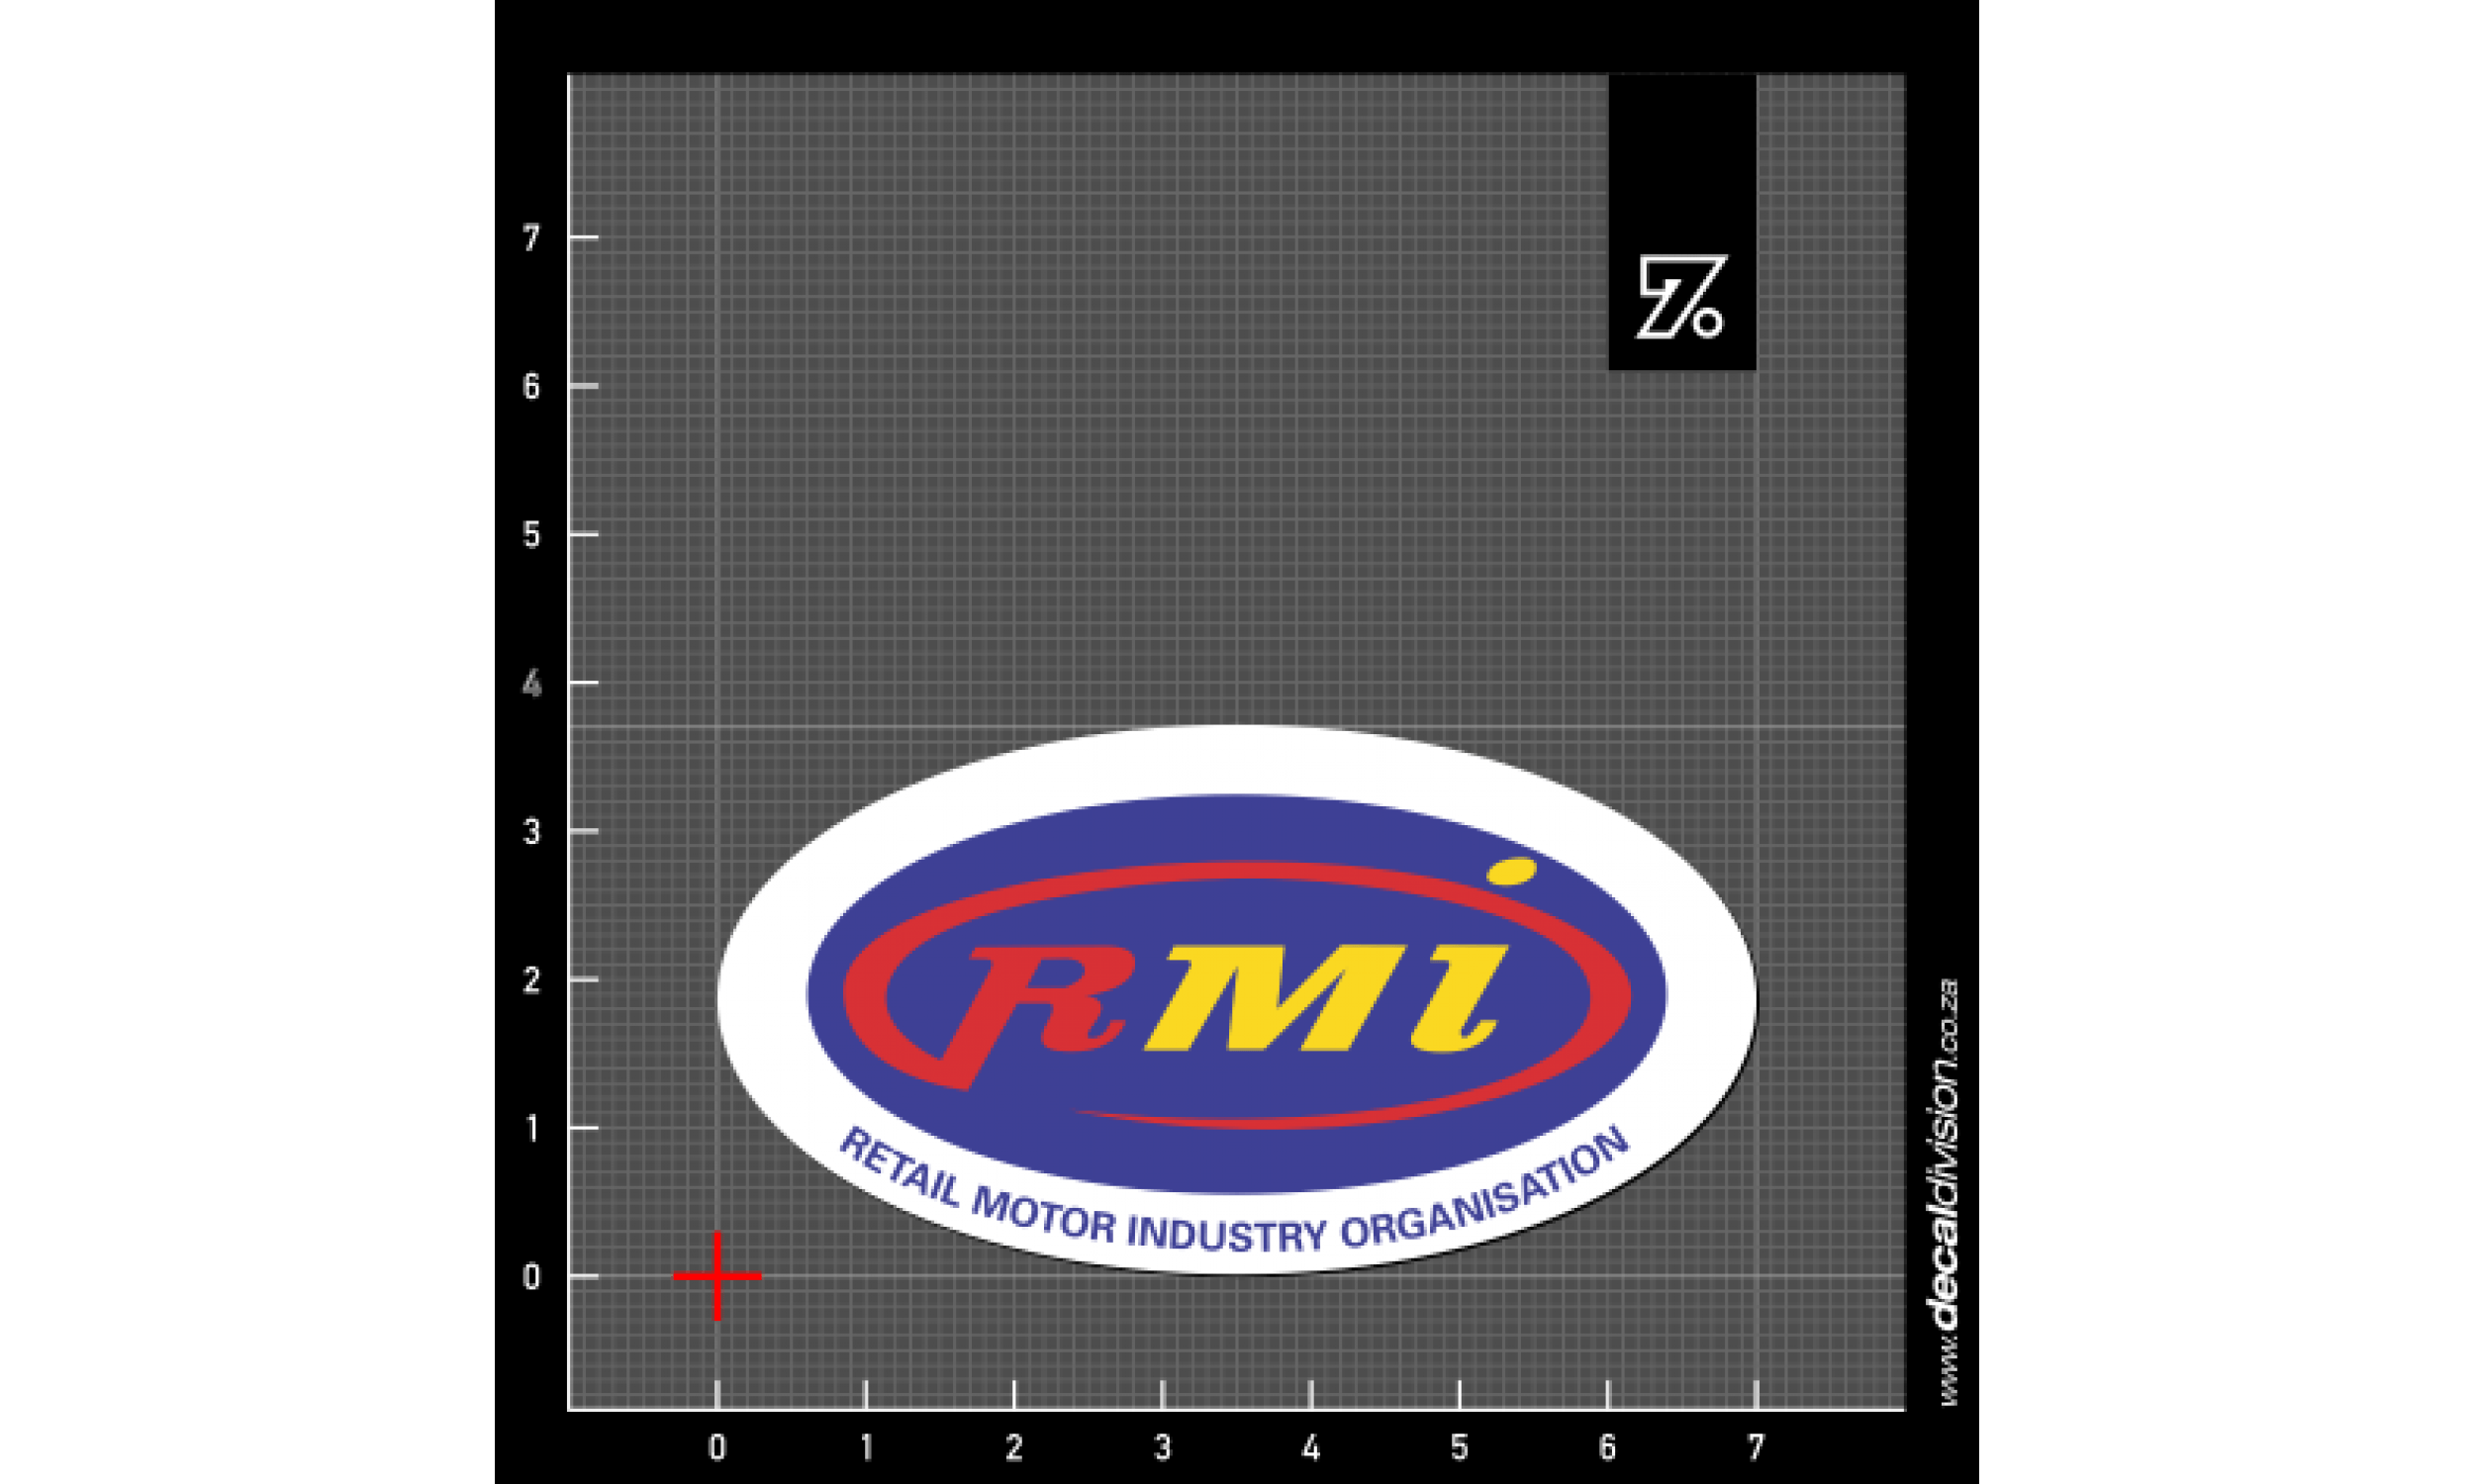 RMI Logo - Retail Motor Industry Organisation